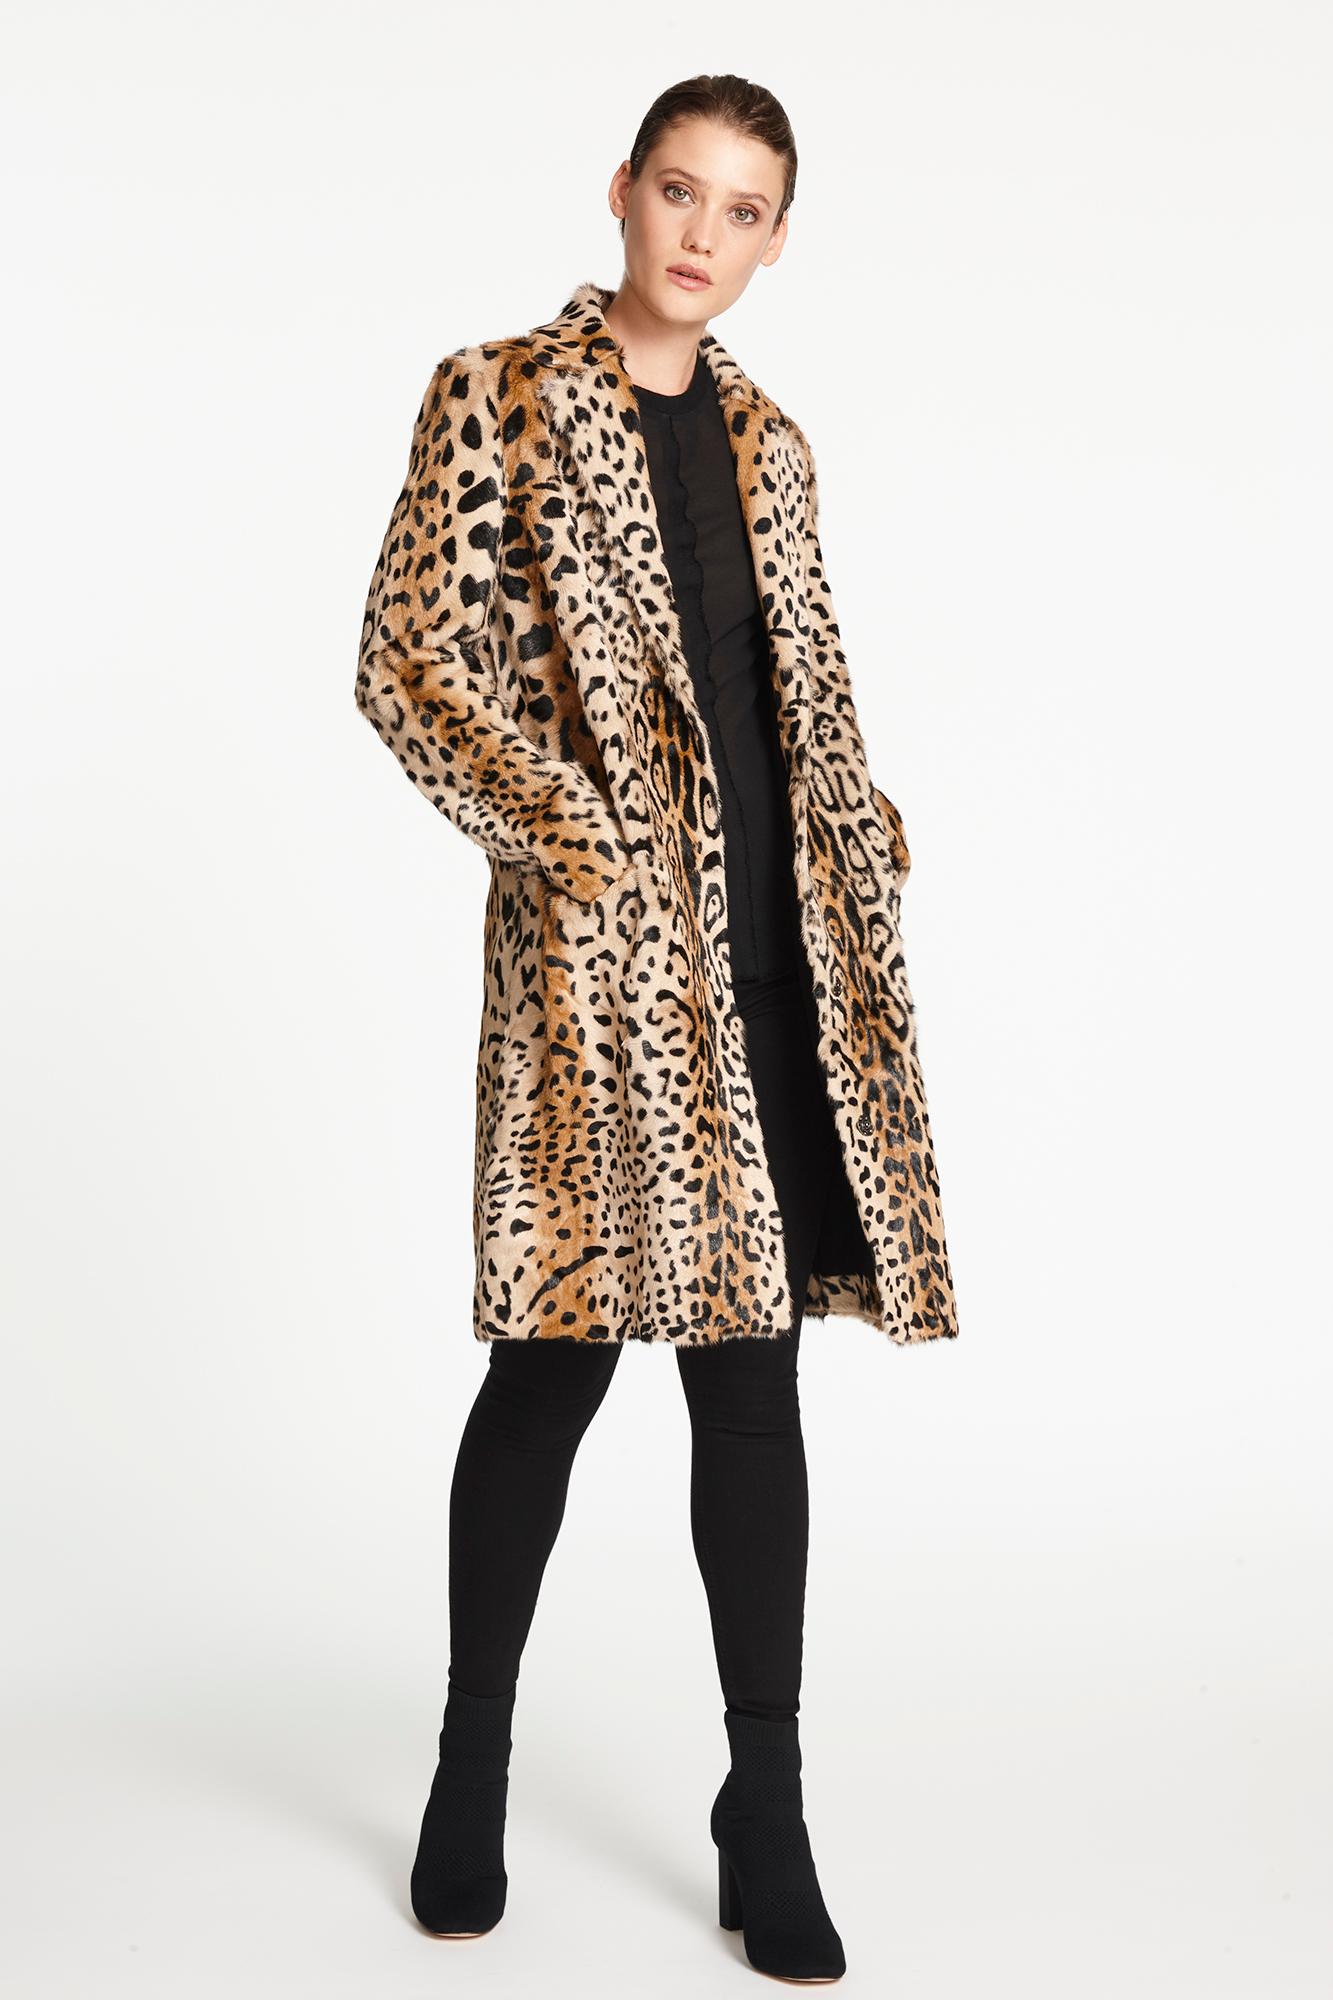 Verheyen London Leopard Print Coat in Natural Goat Hair Fur UK 8 - Brand New  1